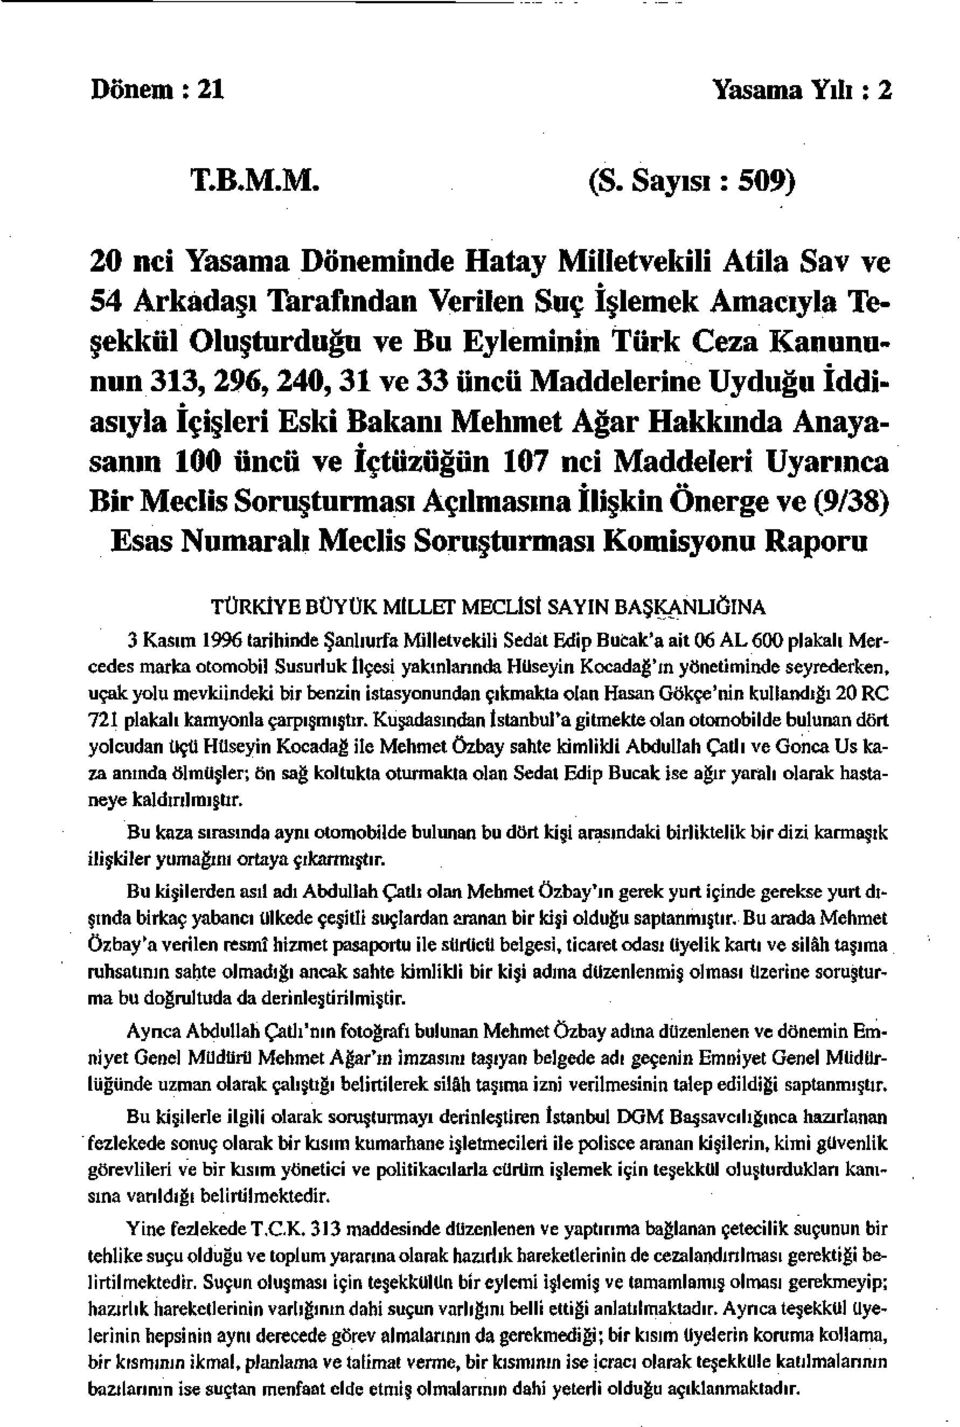 33 üncü Maddelerine Uyduğu İddiasıyla İçişleri Eski Bakanı Mehmet Ağar Hakkında Anayasanın 100 üncü ve içtüzüğün 107 nci Maddeleri Uyarınca Bir Meclis Soruşturması Açılmasına İlişkin Önerge ve (9/38)